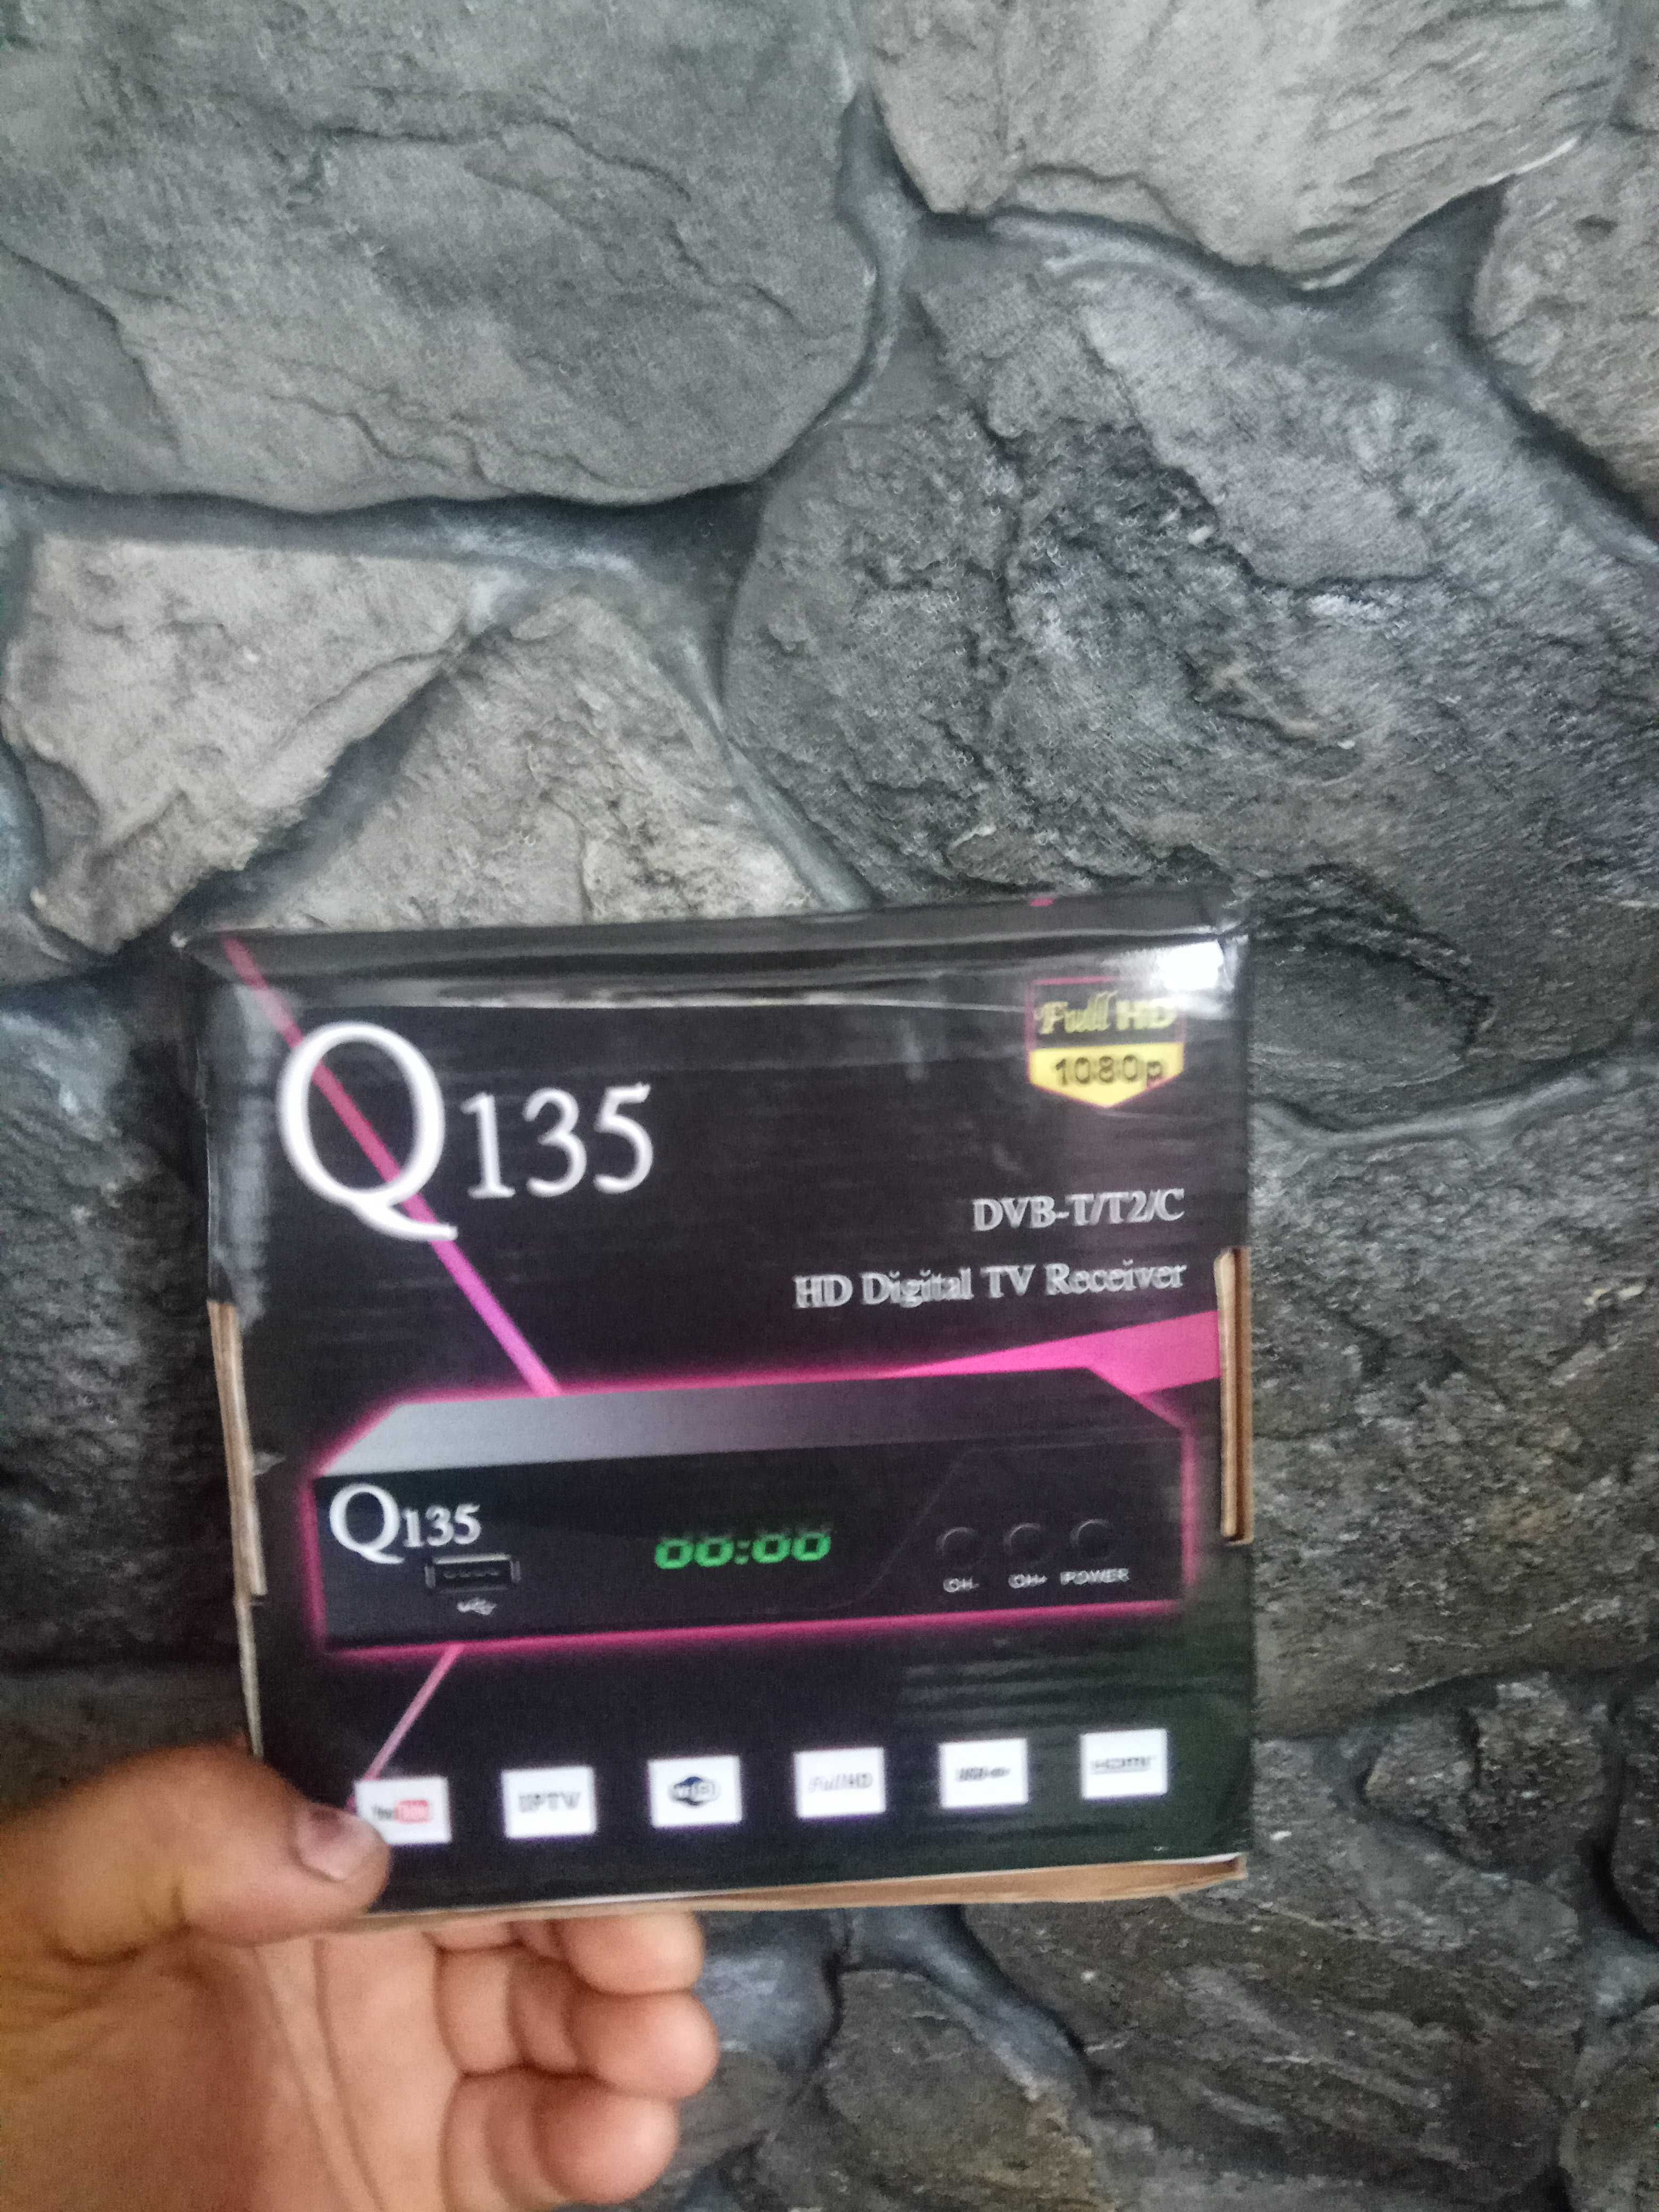 ресивер Q-135 для цифрового ТВ